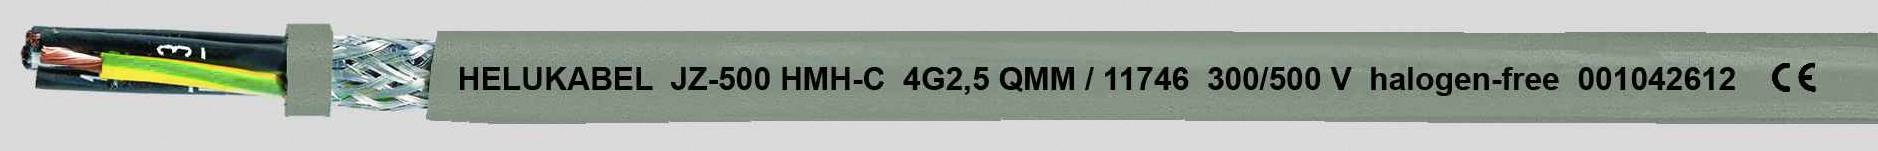 HELUKABEL JZ-500 HMH-C Steuerleitung 5 G 1.50 mm² Grau 11725-1000 1000 m